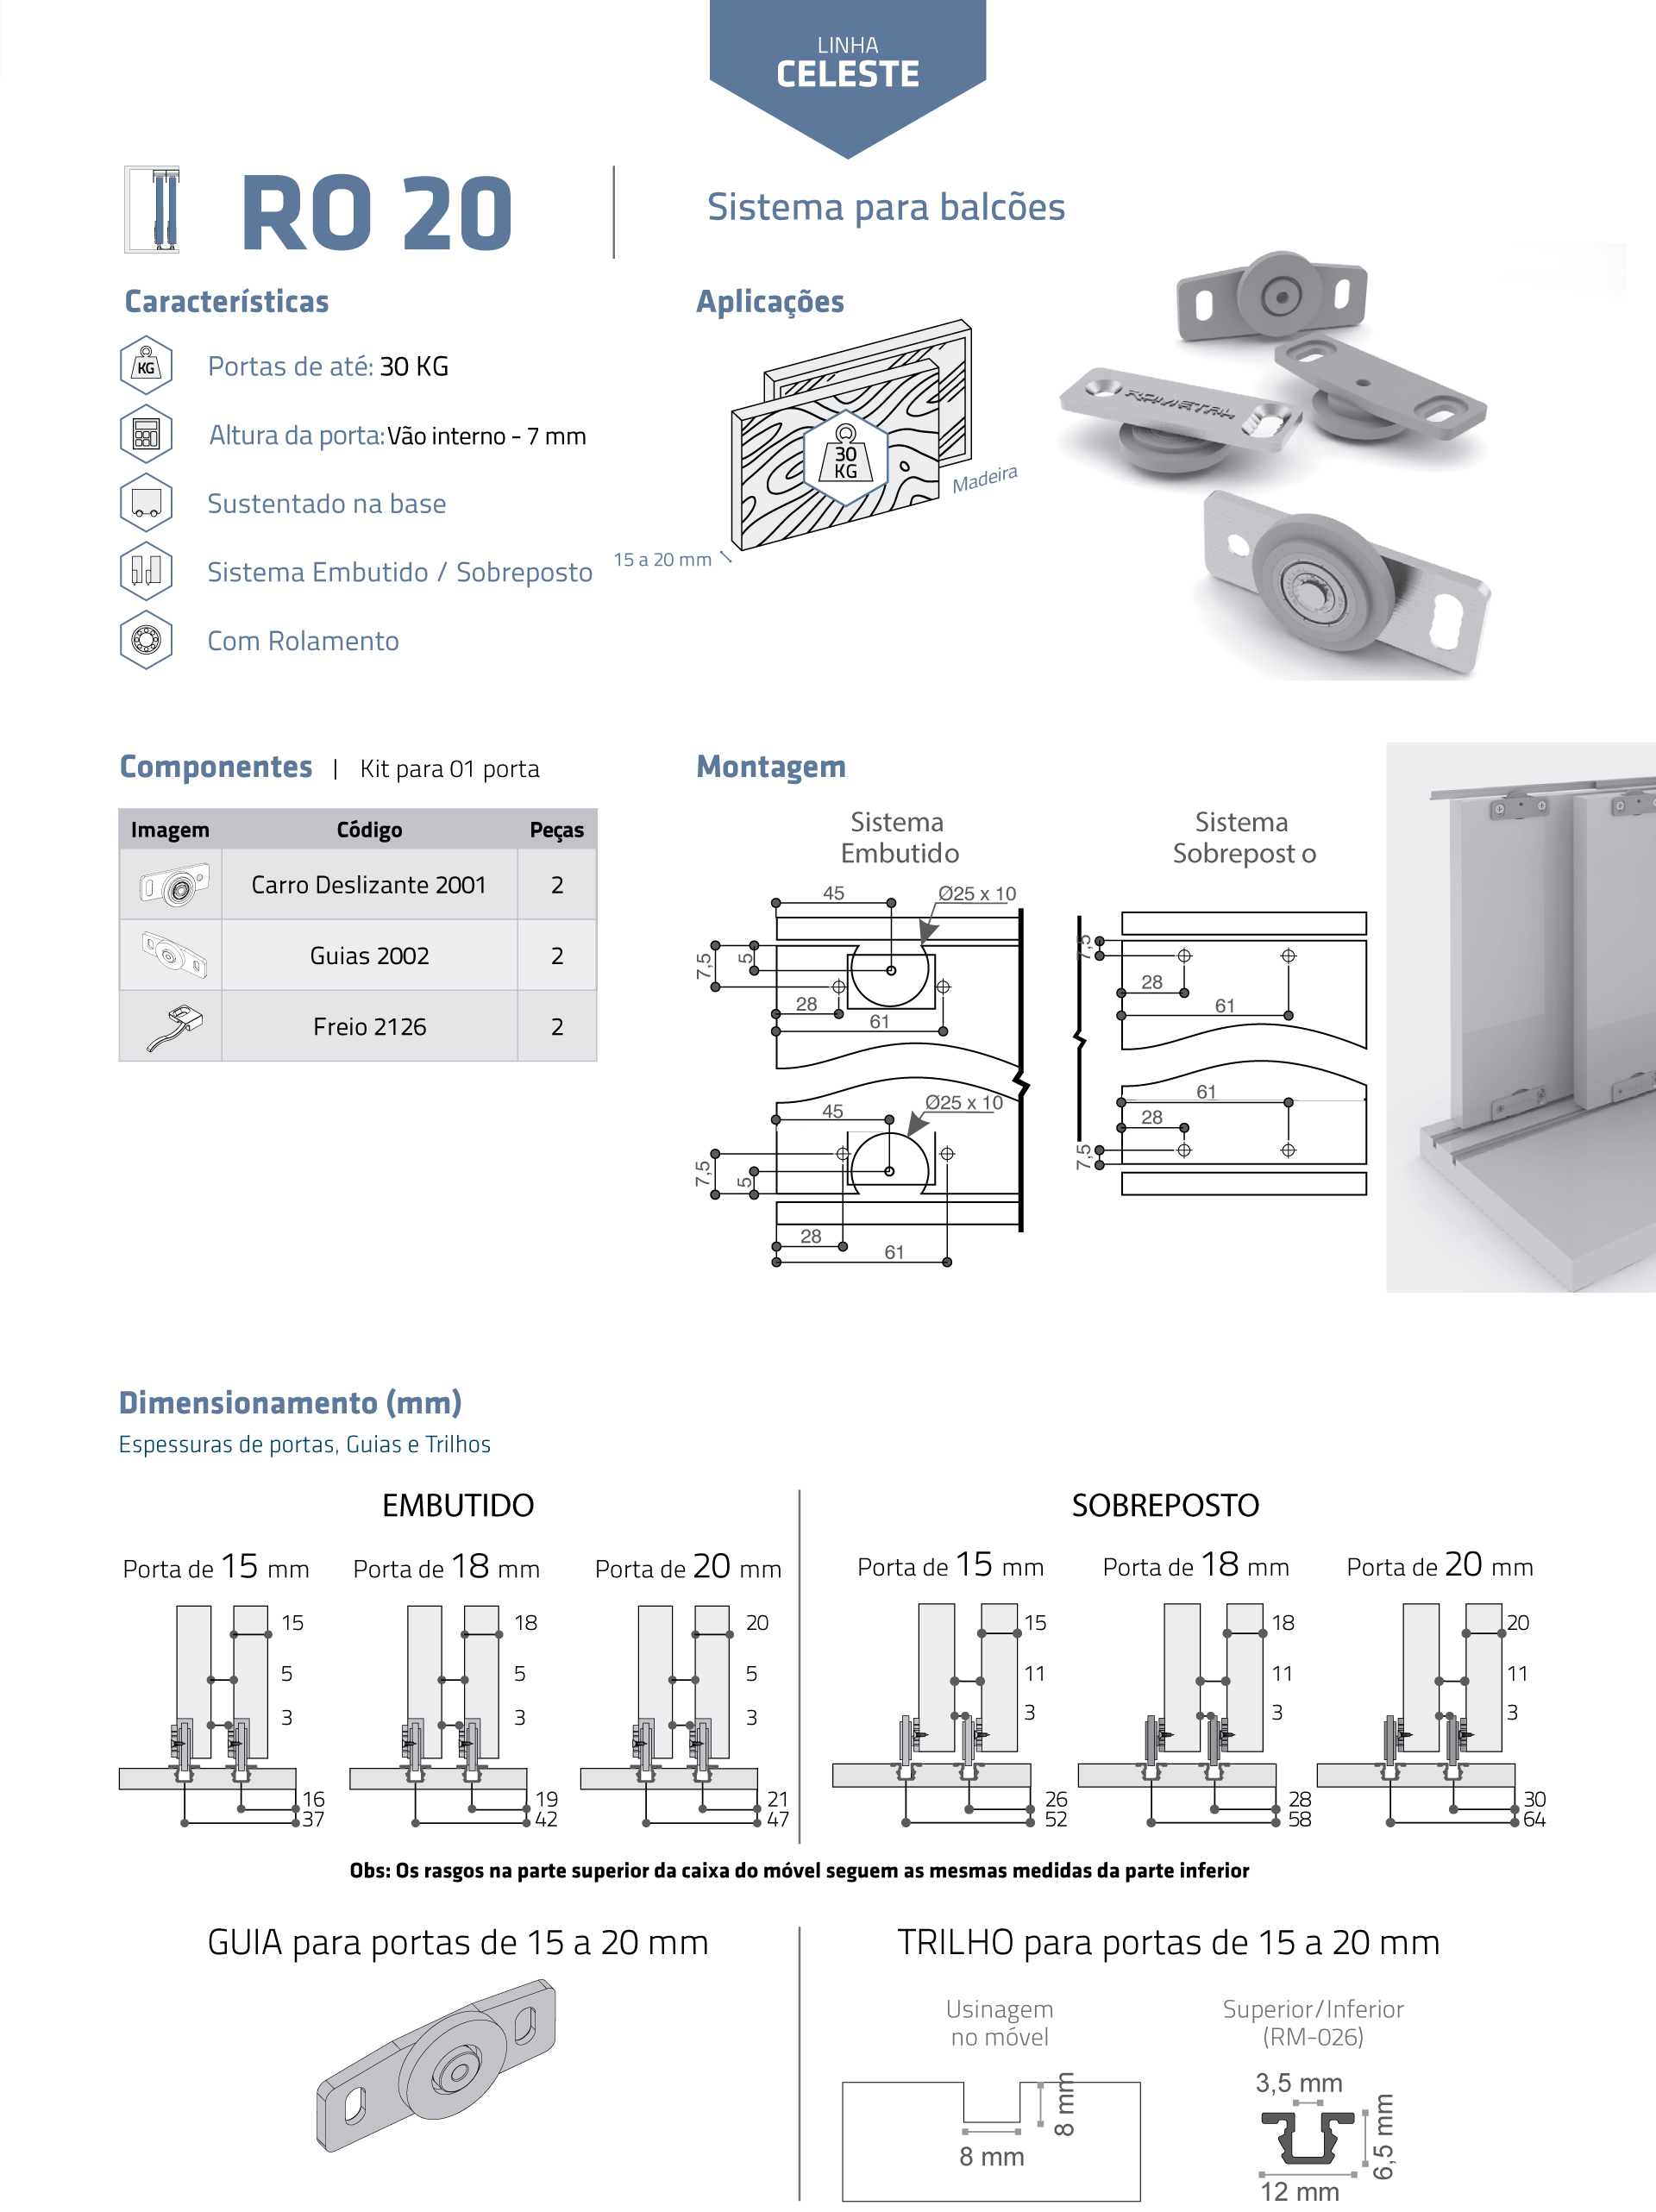 Descrição técnica do sistema ro20